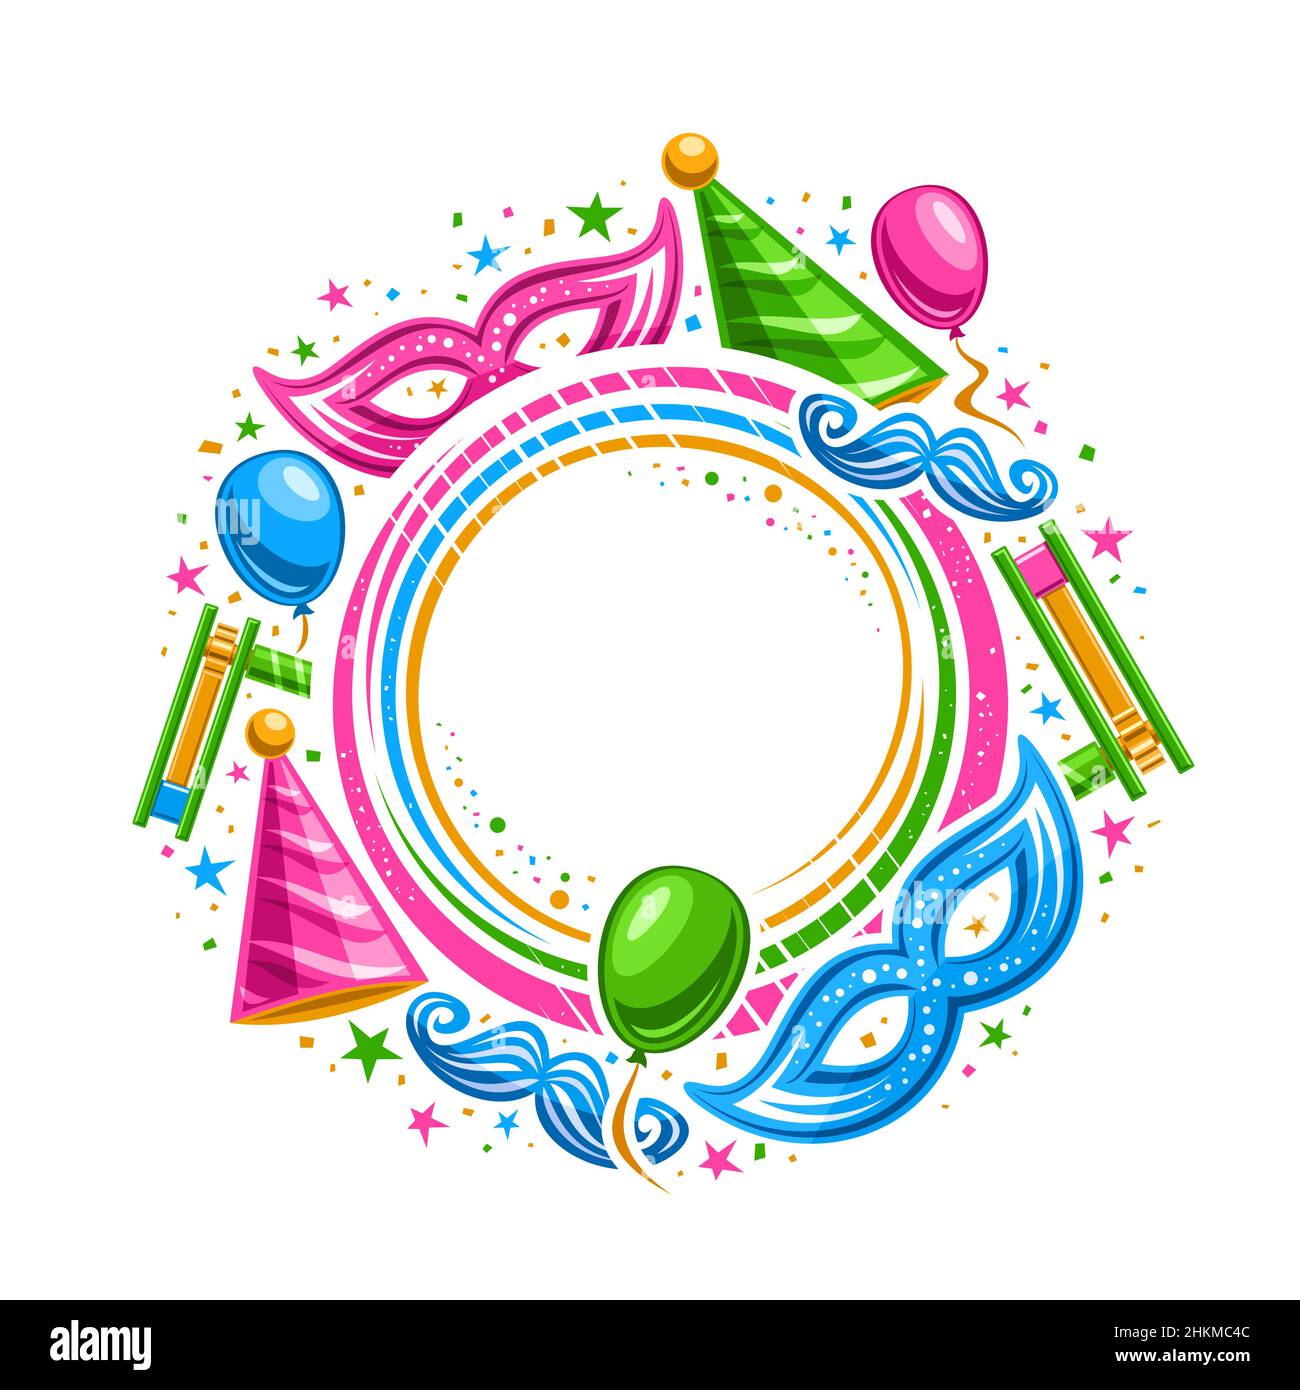 Vektorrahmen für Purim Carnival mit Textrahmen, Kreiskonzept mit Illustration der Vielfalt lebendige purim-Symbole, dekorative Konfetti und ca. Stock Vektor